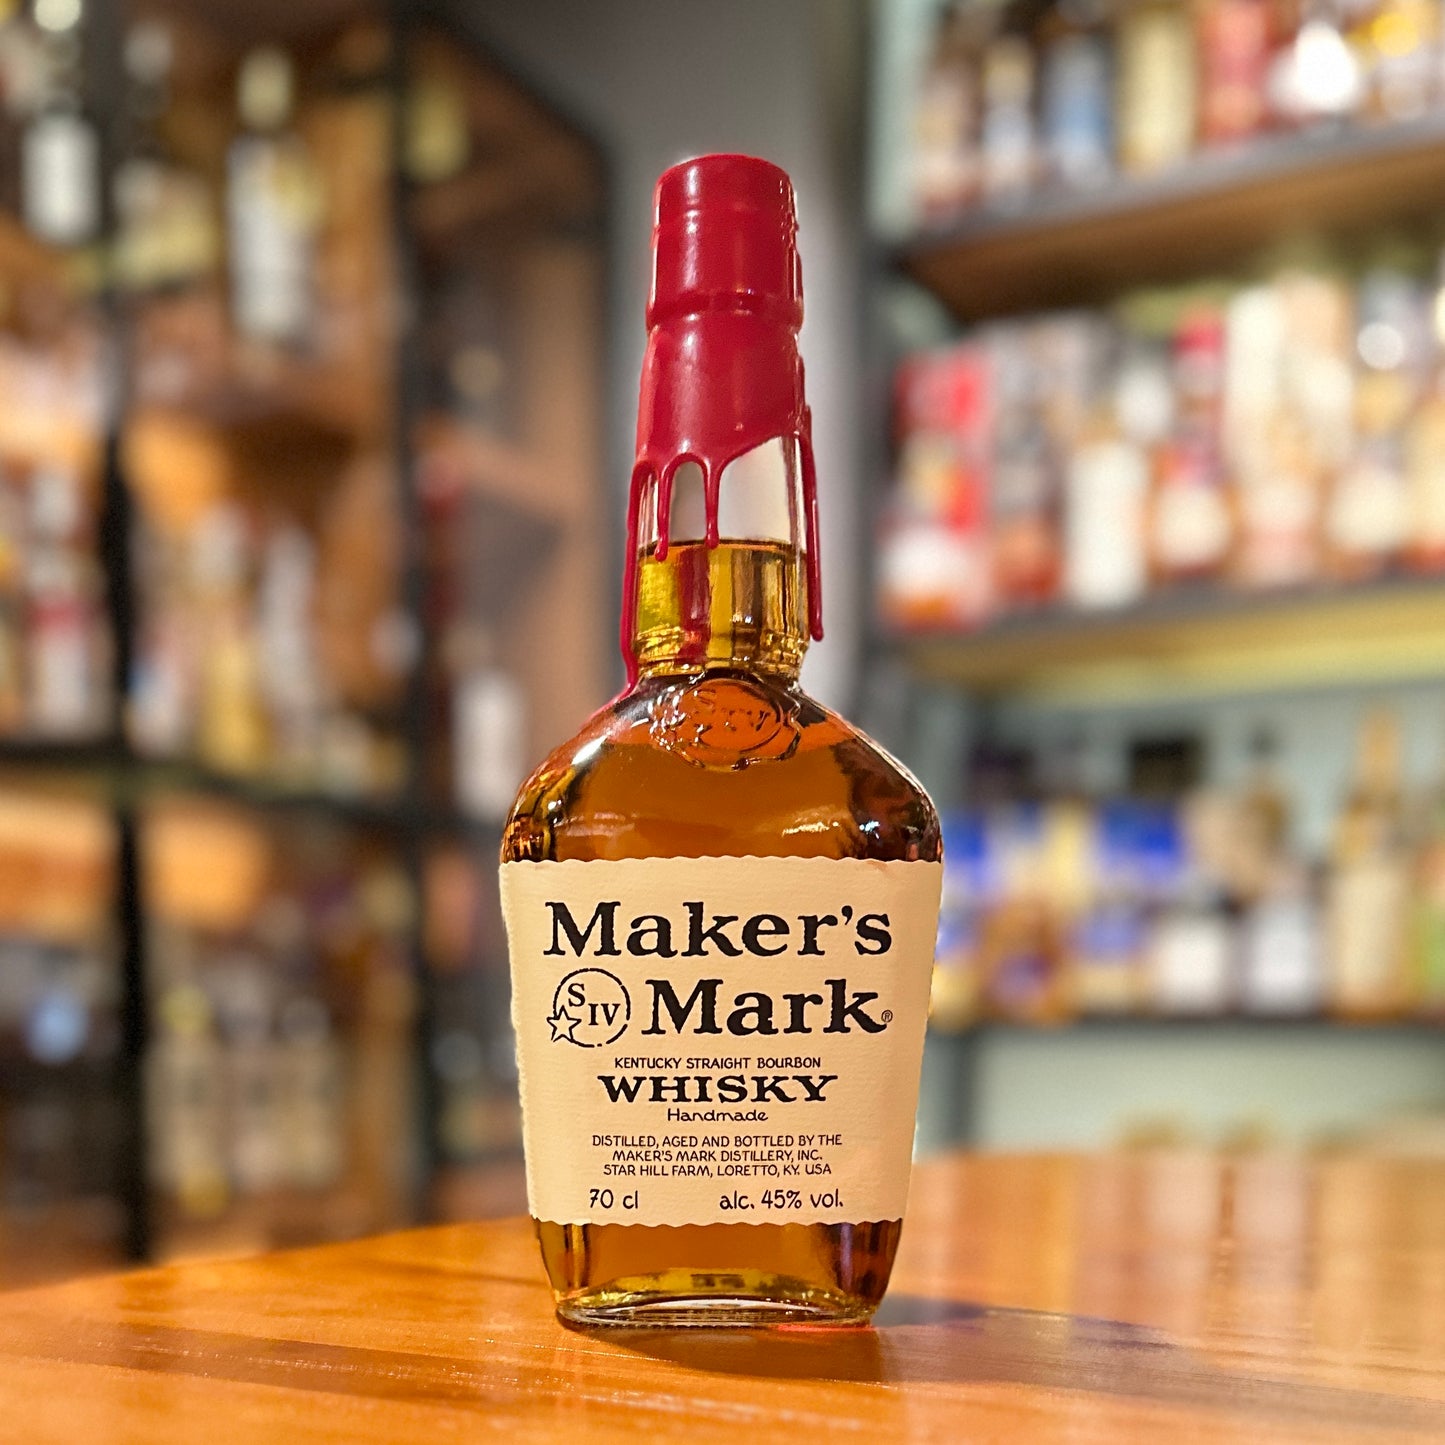 Maker’s Mark Kentucky Straight Bourbon Whiskey